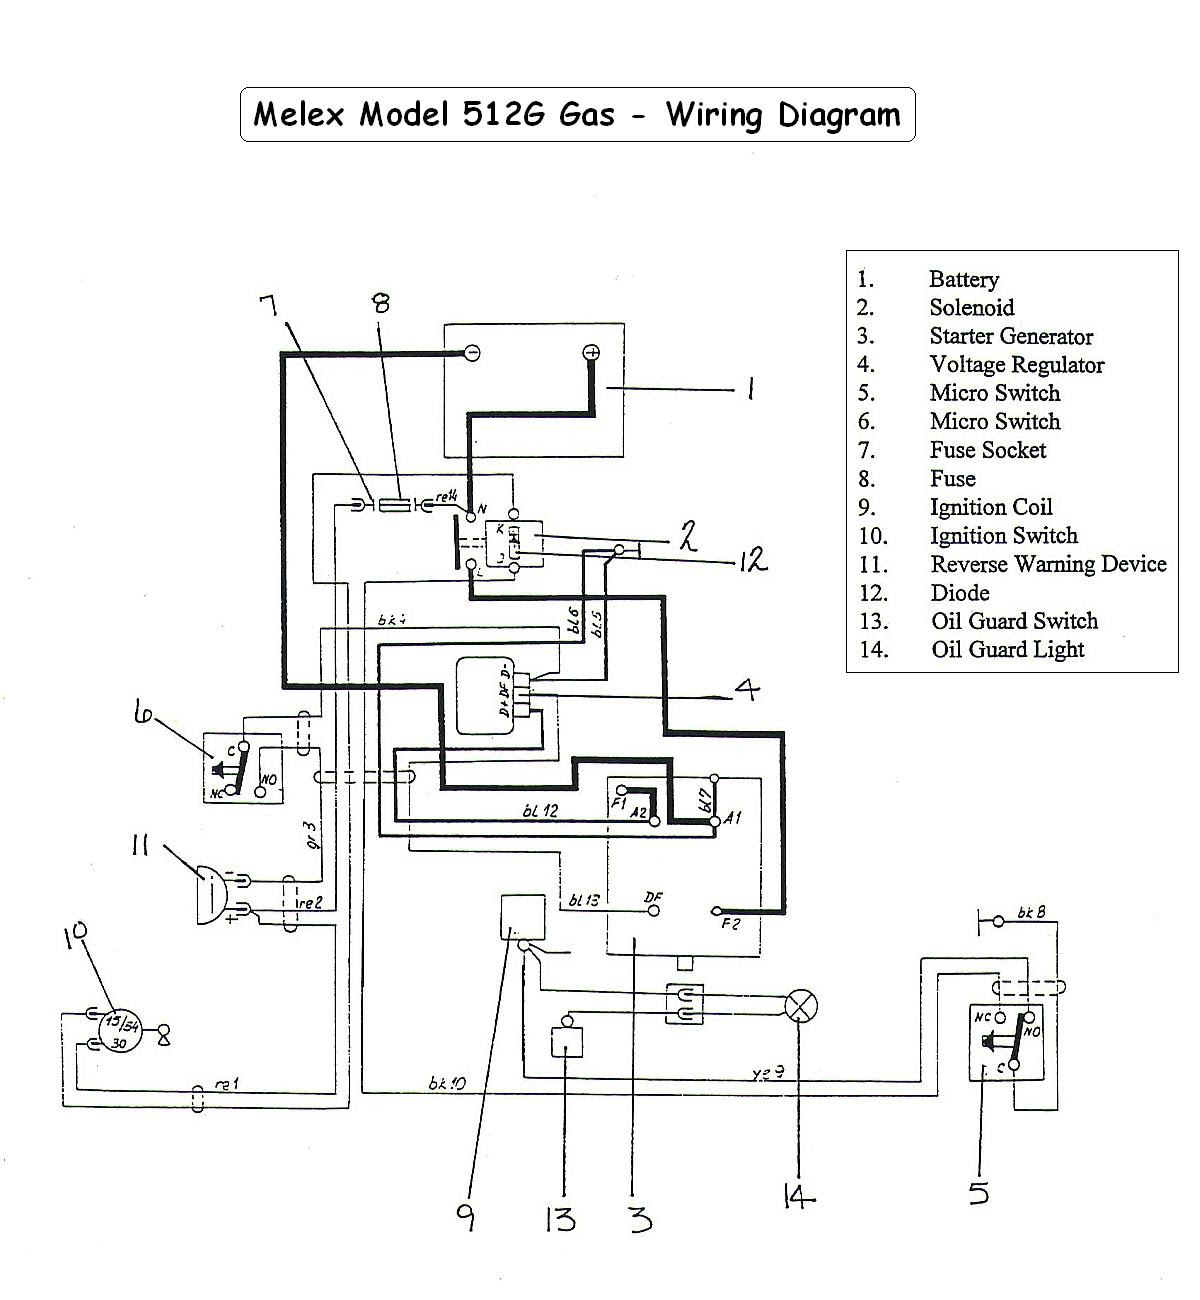 bmwwiringdiagram: 1999 Club Car Ignition Wiring Diagram